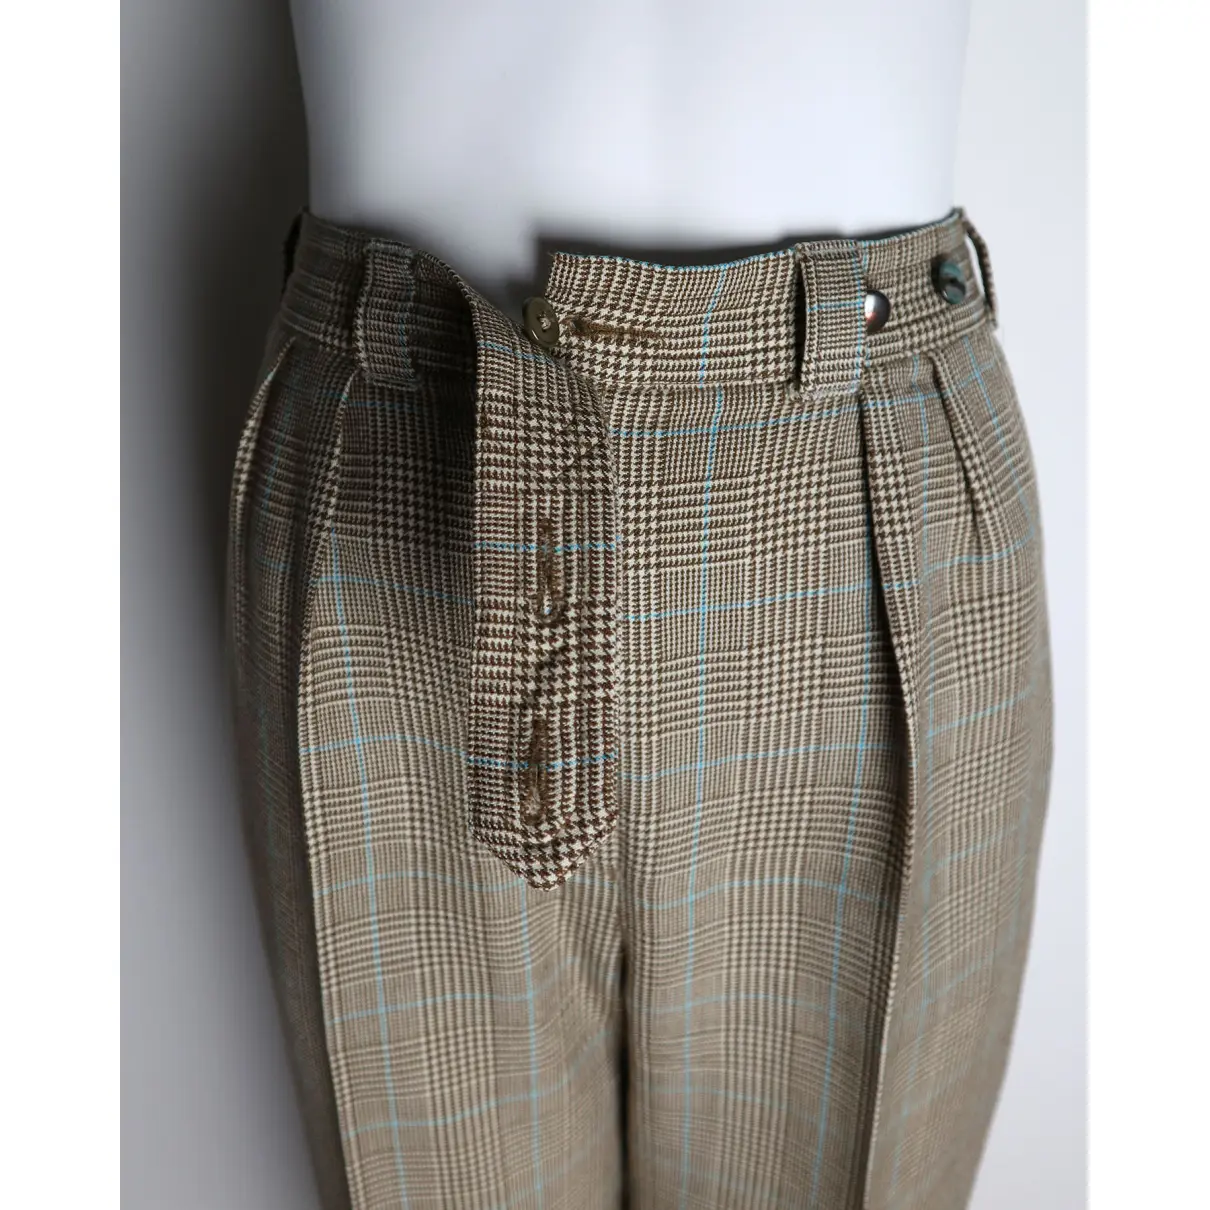 Wool carot pants Laurel - Vintage